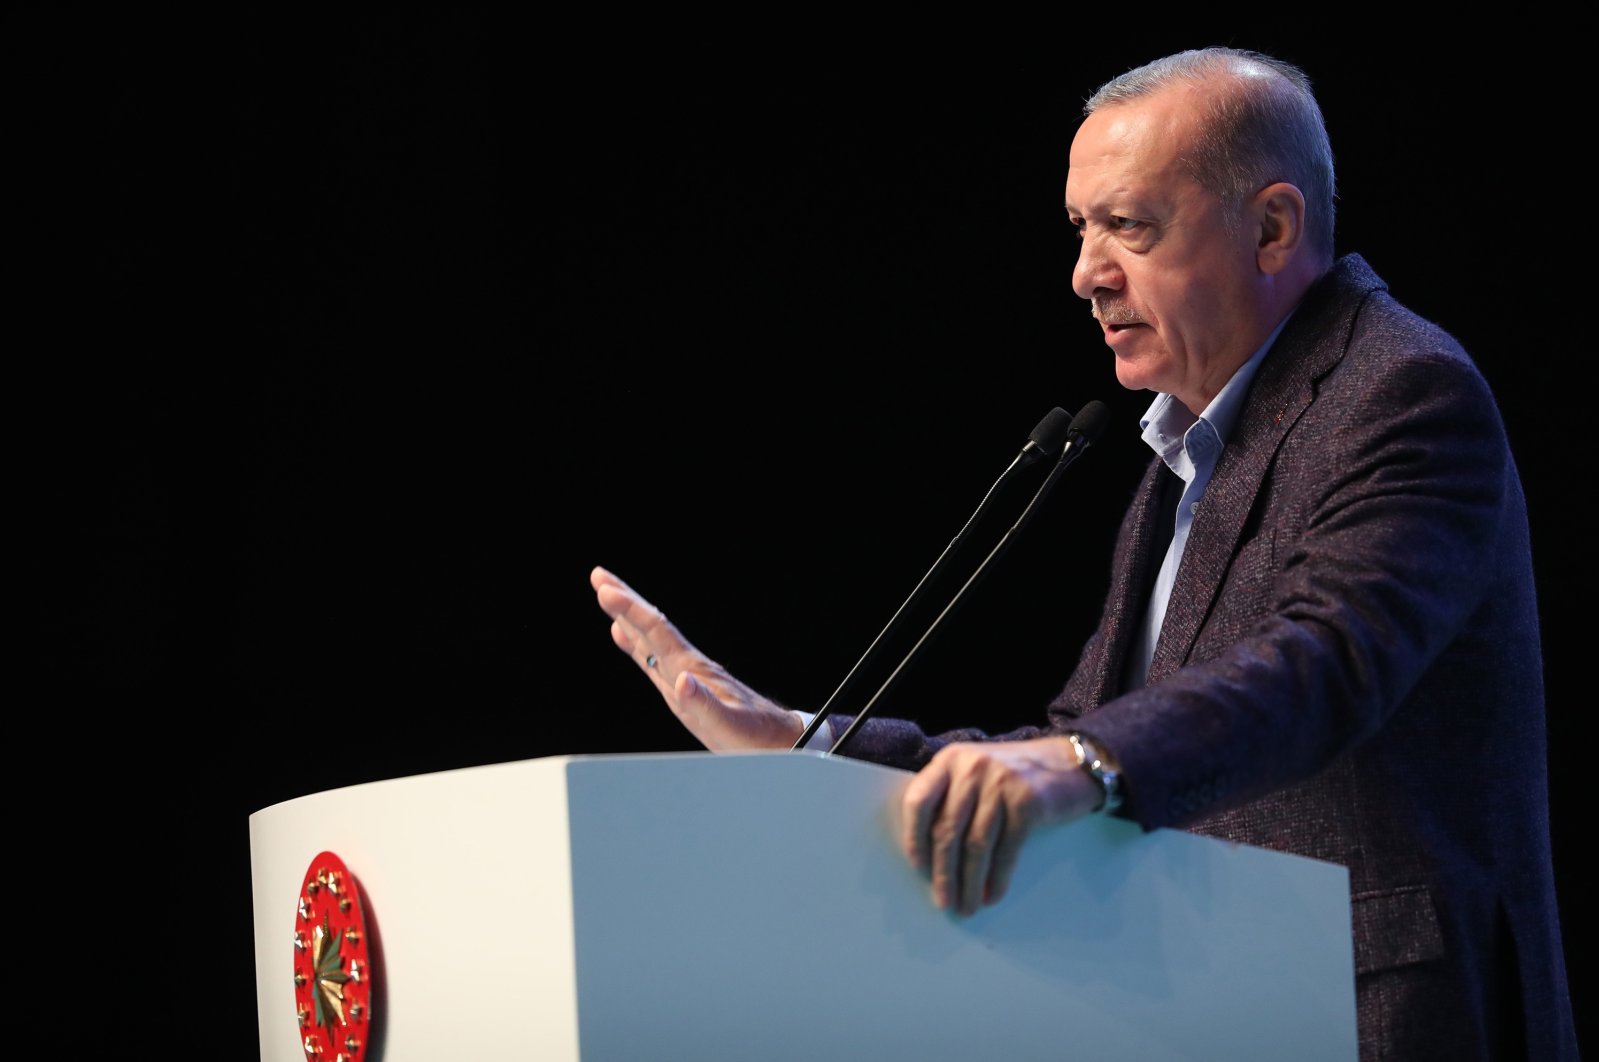 Pendidikan Turki bersaing dengan yang terbaik: Presiden Erdogan